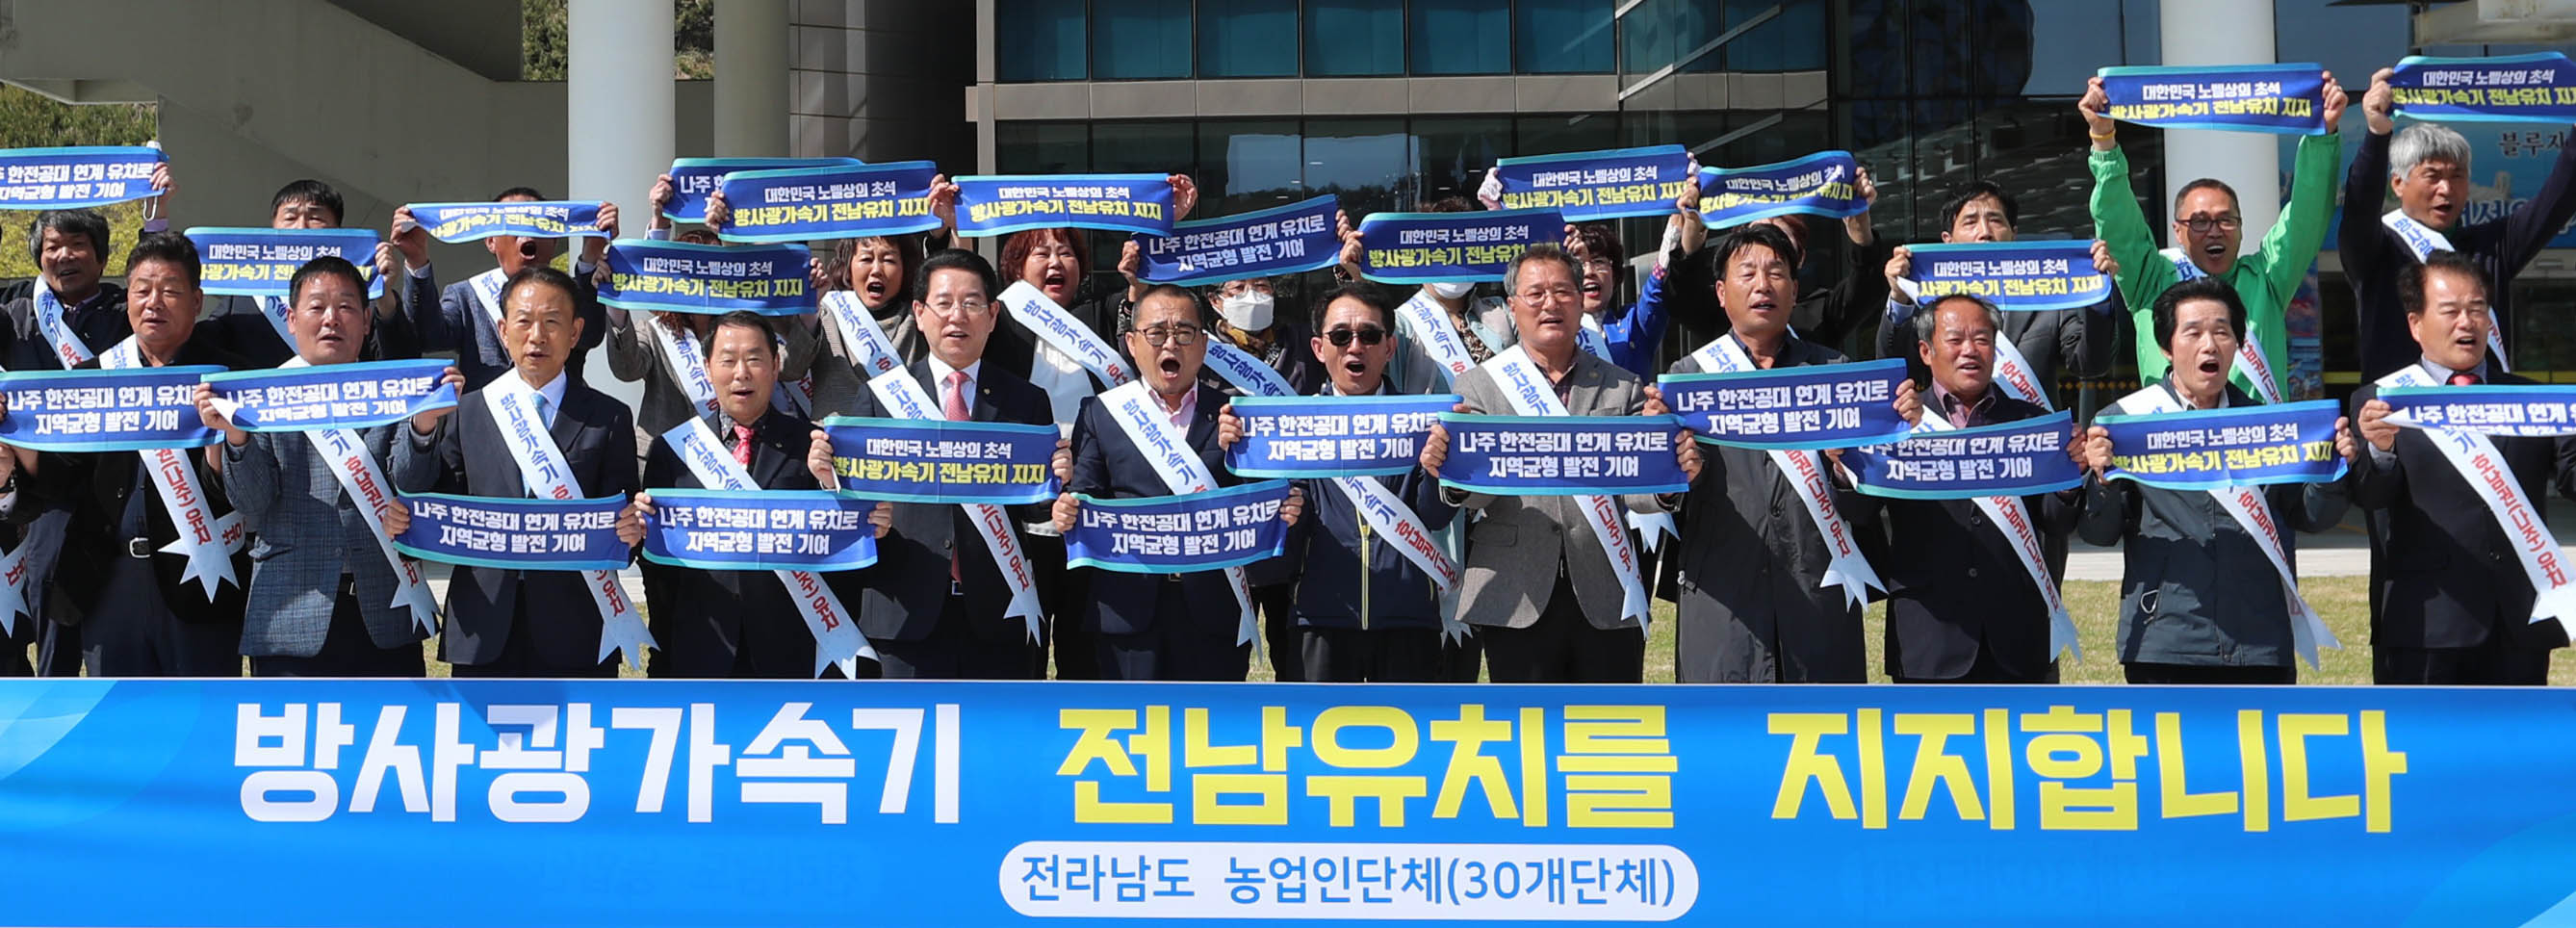 전라남도 농업인단체 방사광가속기 유치 지지 성명서 발표2